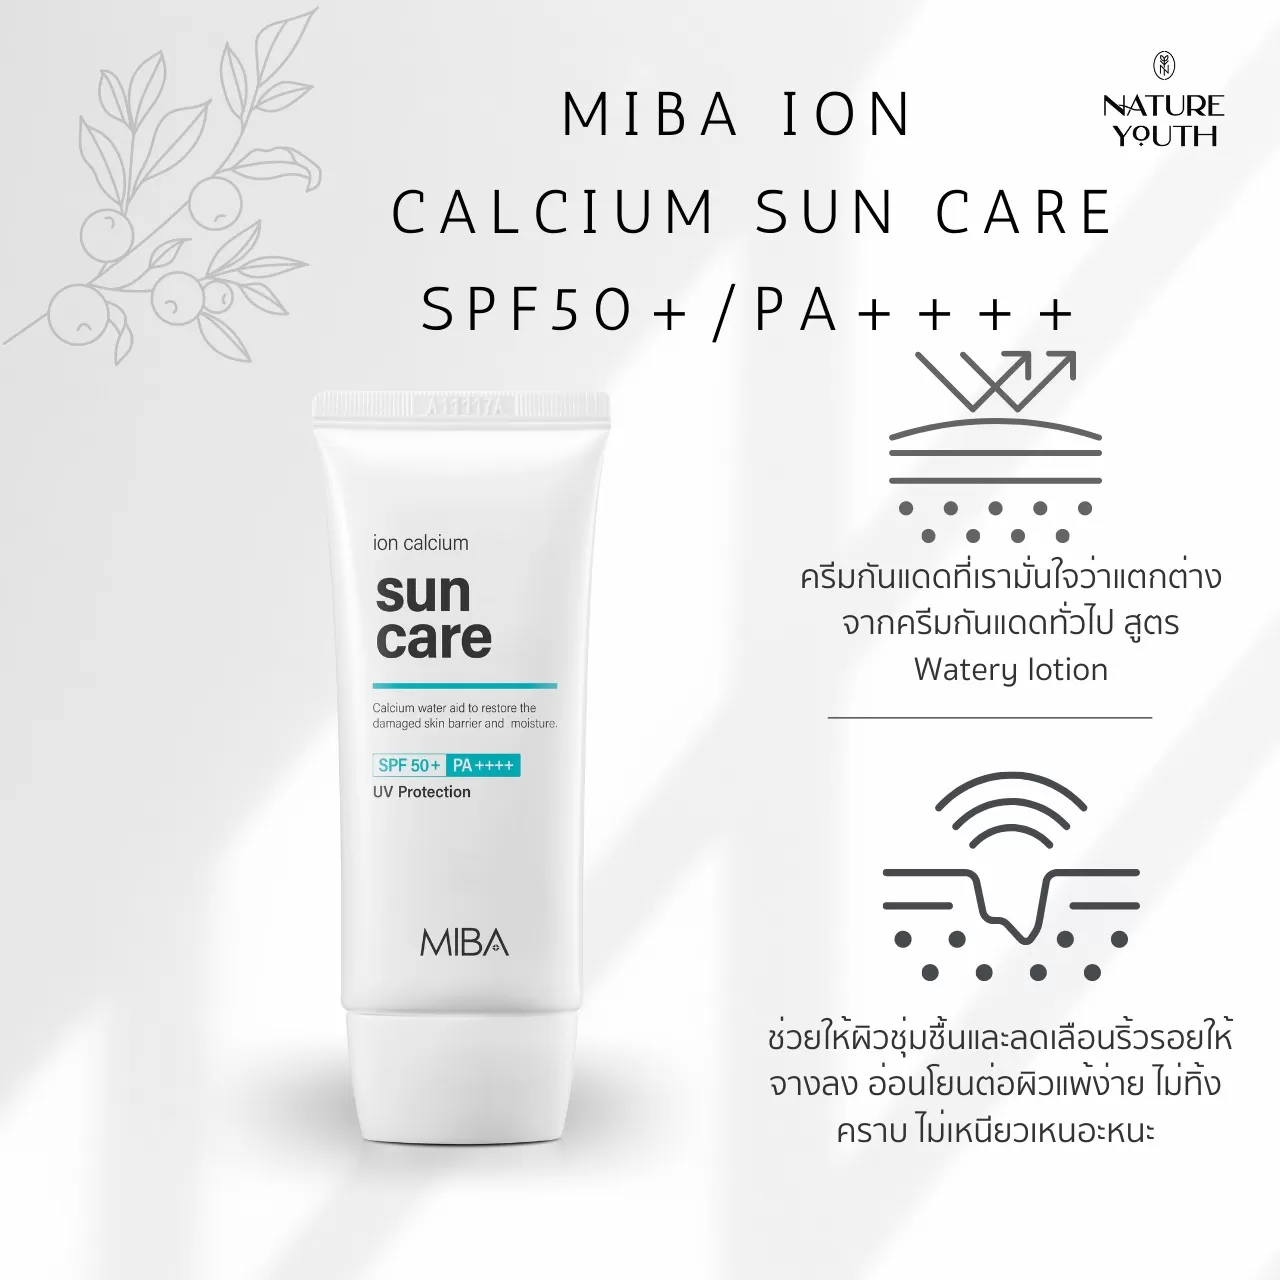 درباره ضدآفتاب میبا calcium sun care SPF50  اورجینال + (تخفیف)